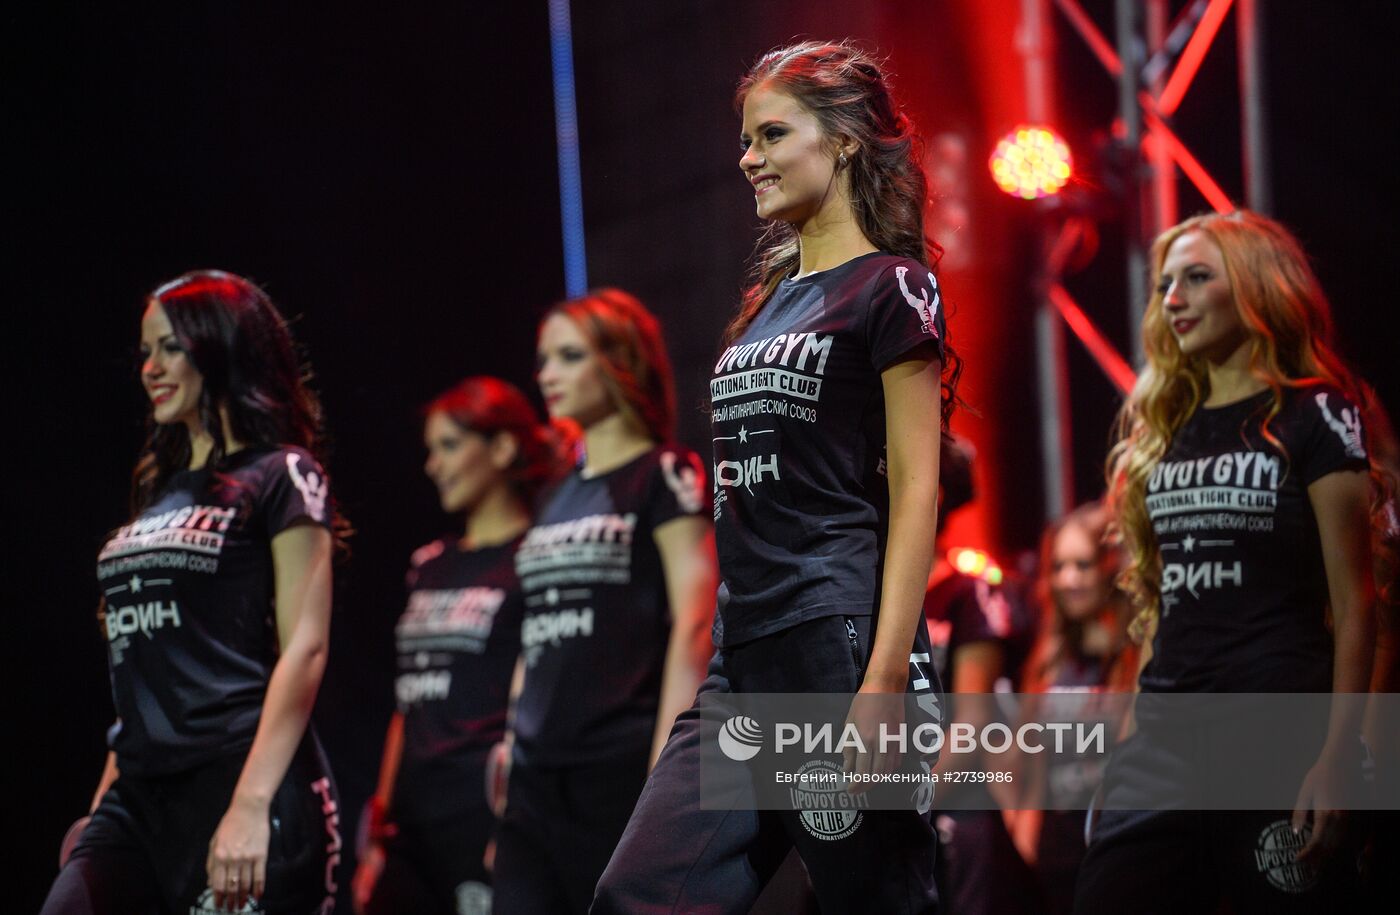 XXI Национальный фестиваль талантов и красоты "Краса России"